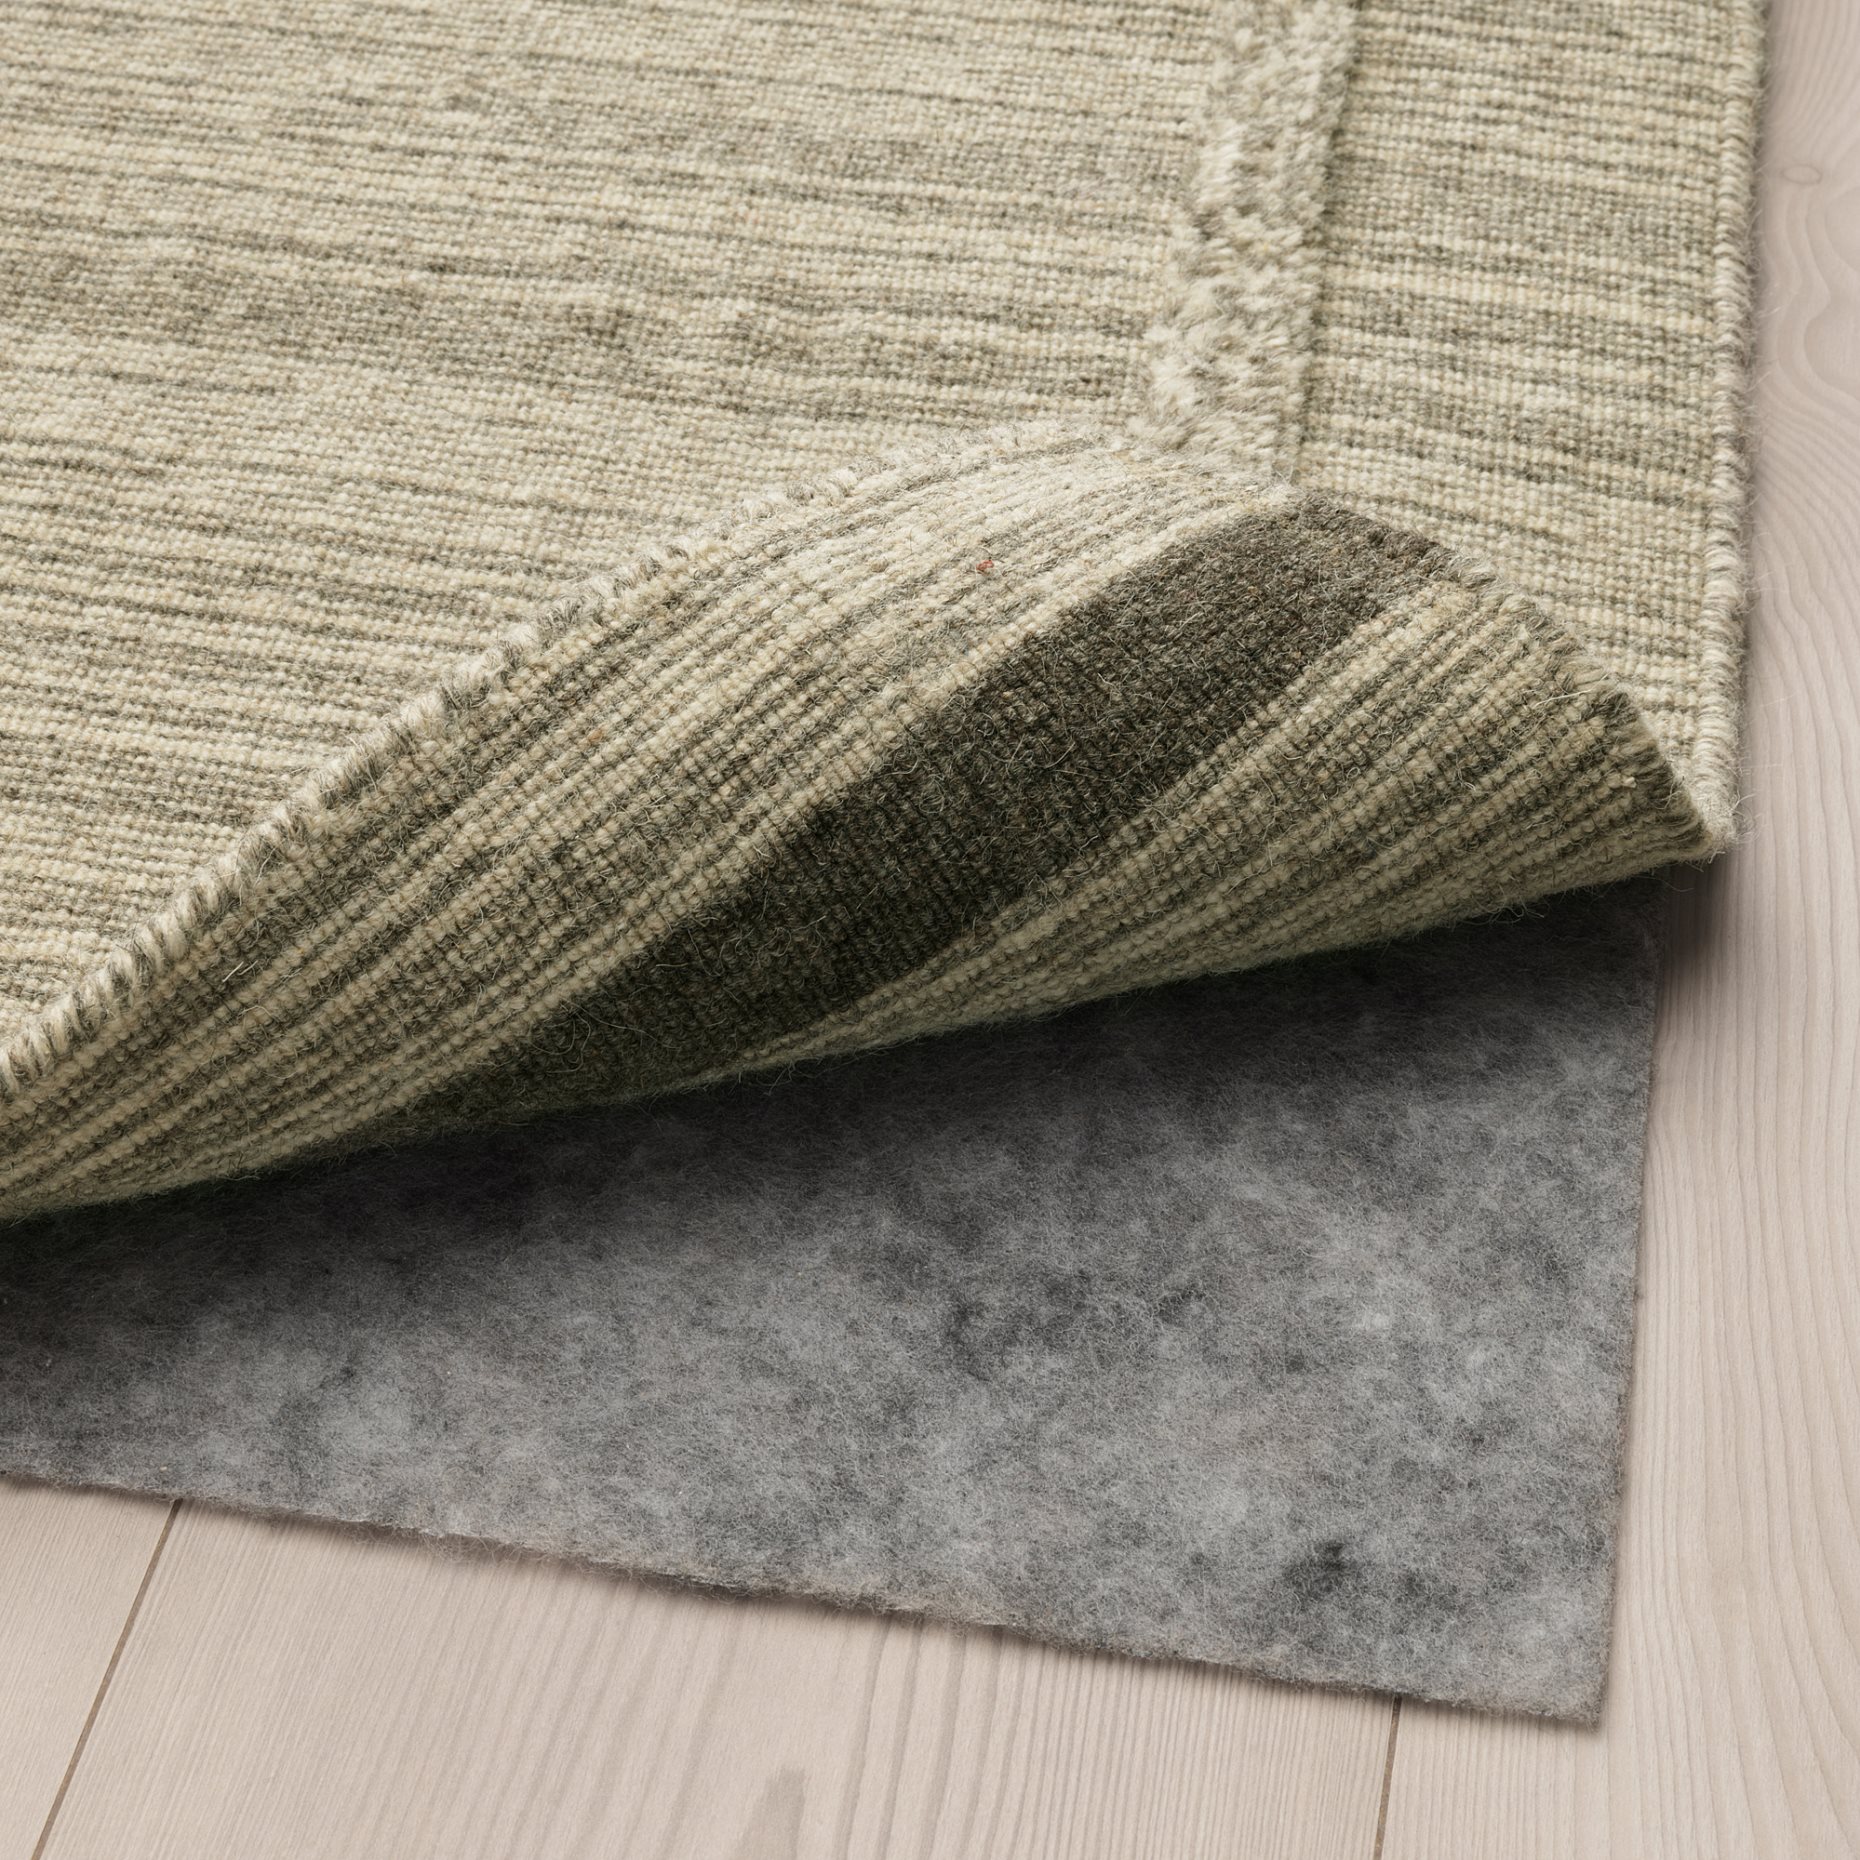 STOPP FILT, подложка за килим против хлъзгане, 70х140 см, 305.502.13